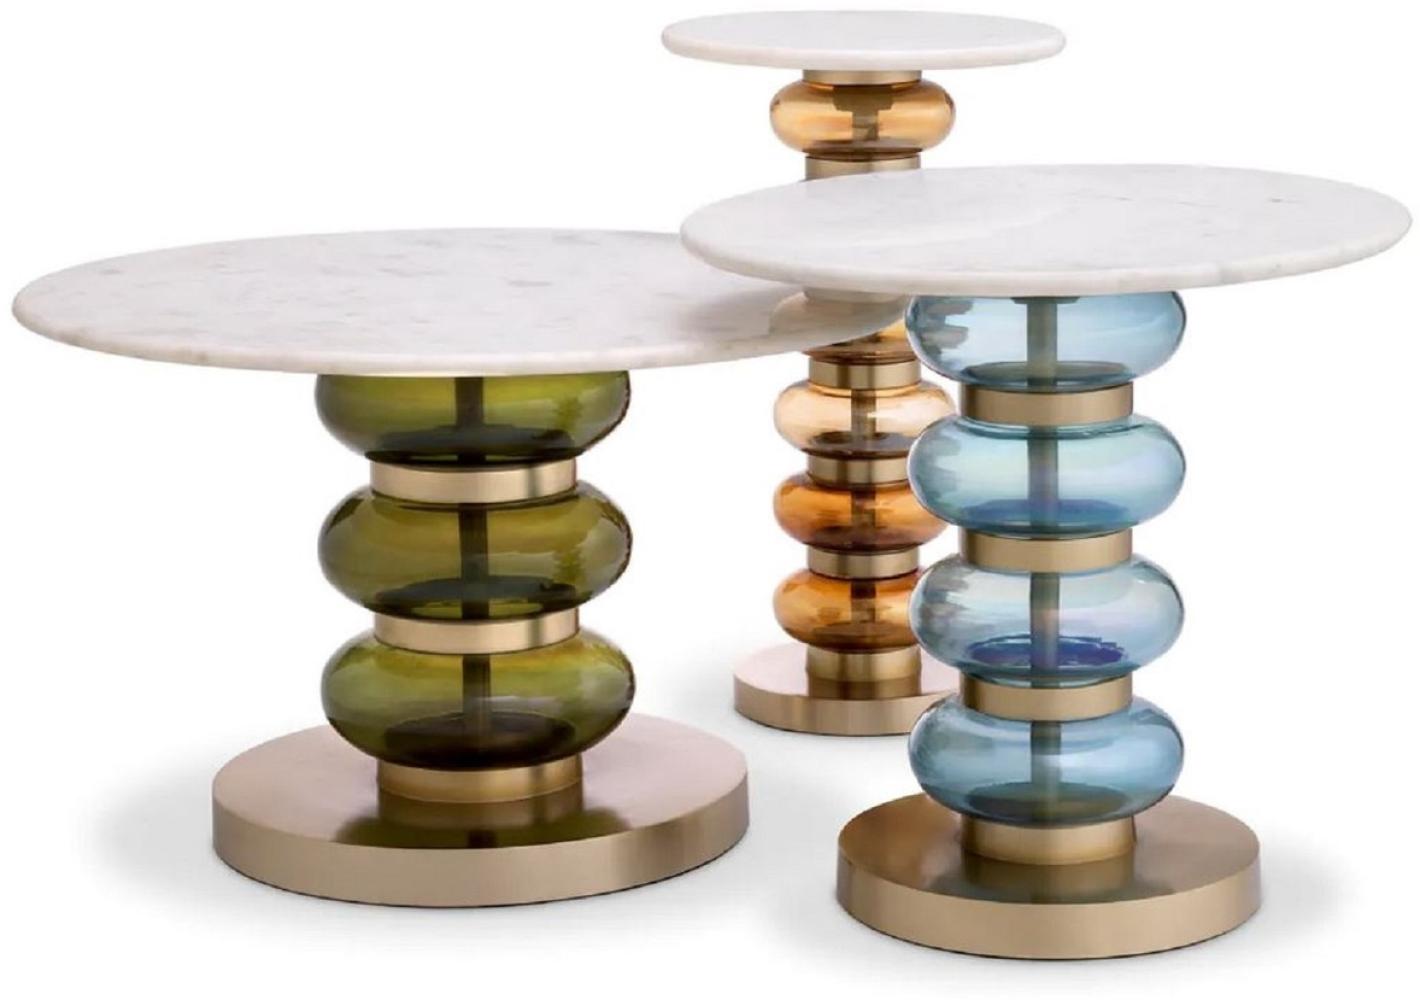 Casa Padrino Luxus Beistelltisch Set Grün / Blau / Orange / Weiß / Messing - 3 Runde Tische mit Marmorplatte - Wohnzimmer Möbel - Hotel Möbel - Luxus Möbel - Luxus Einrichtung - Möbel Luxus Bild 1